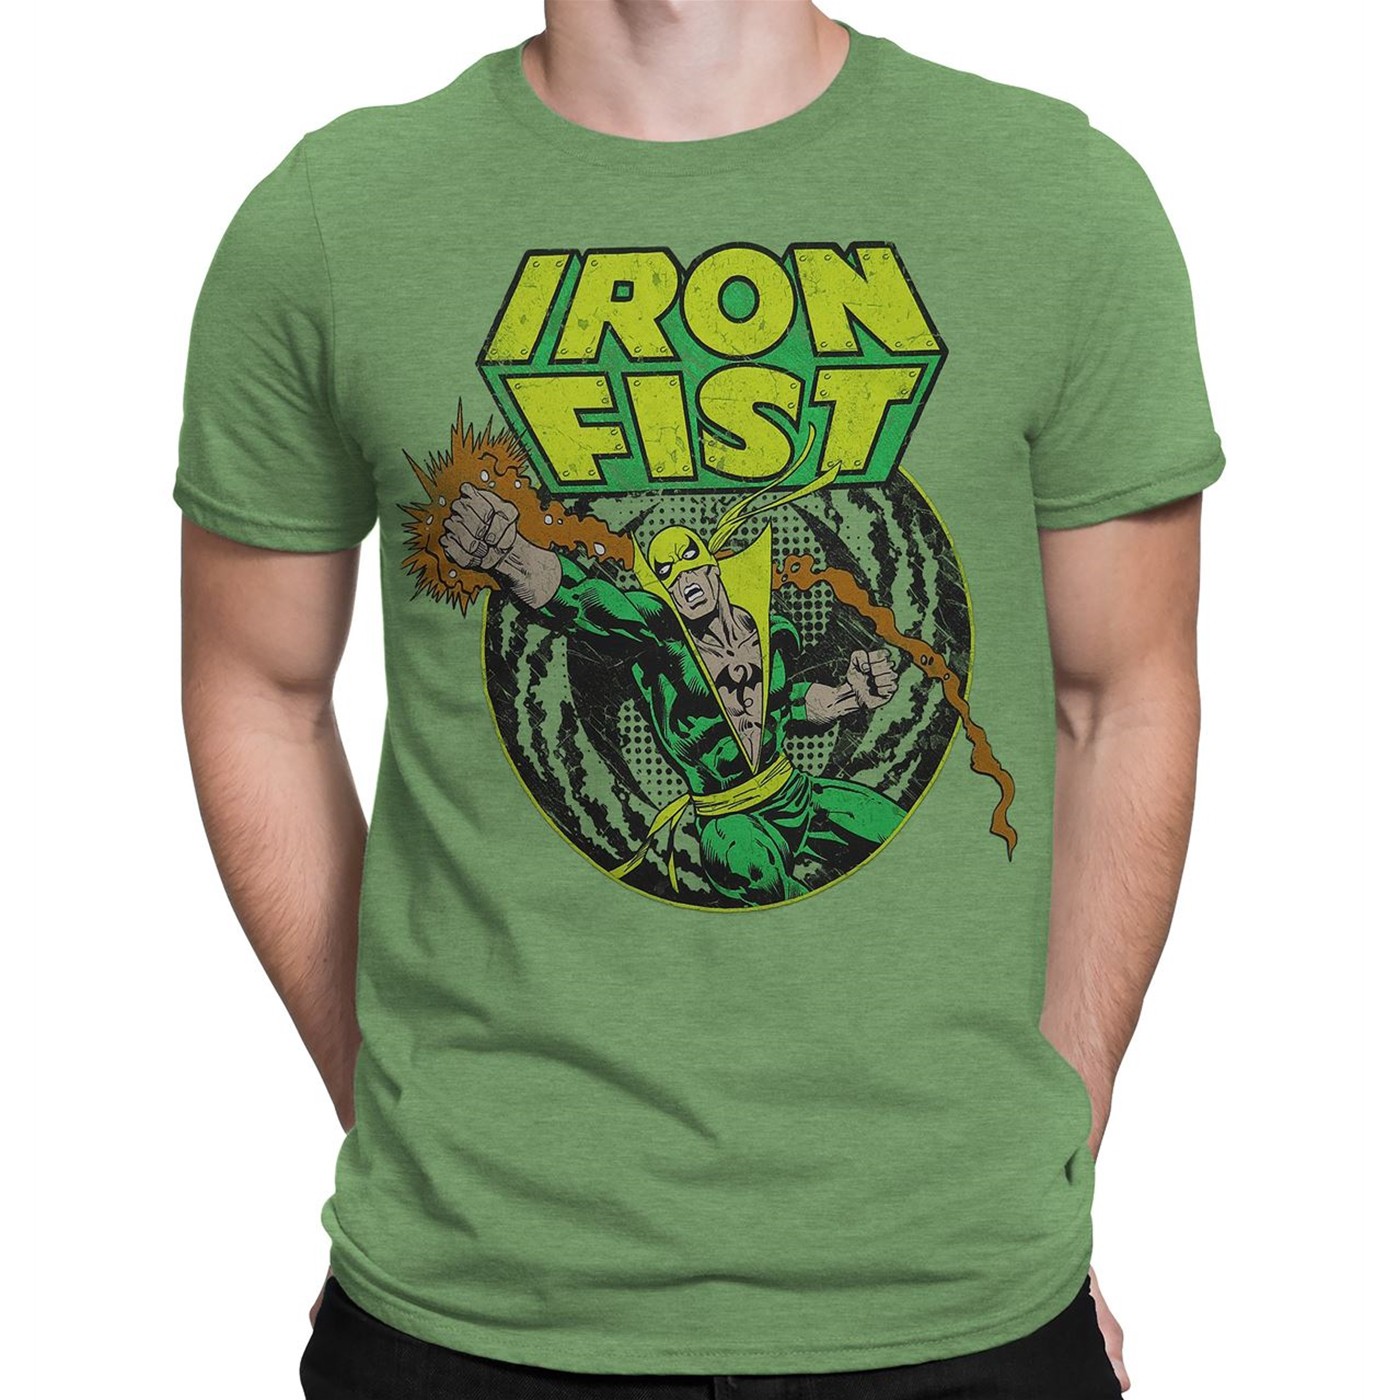 Iron Fist Power Punch Men's T-Shirt